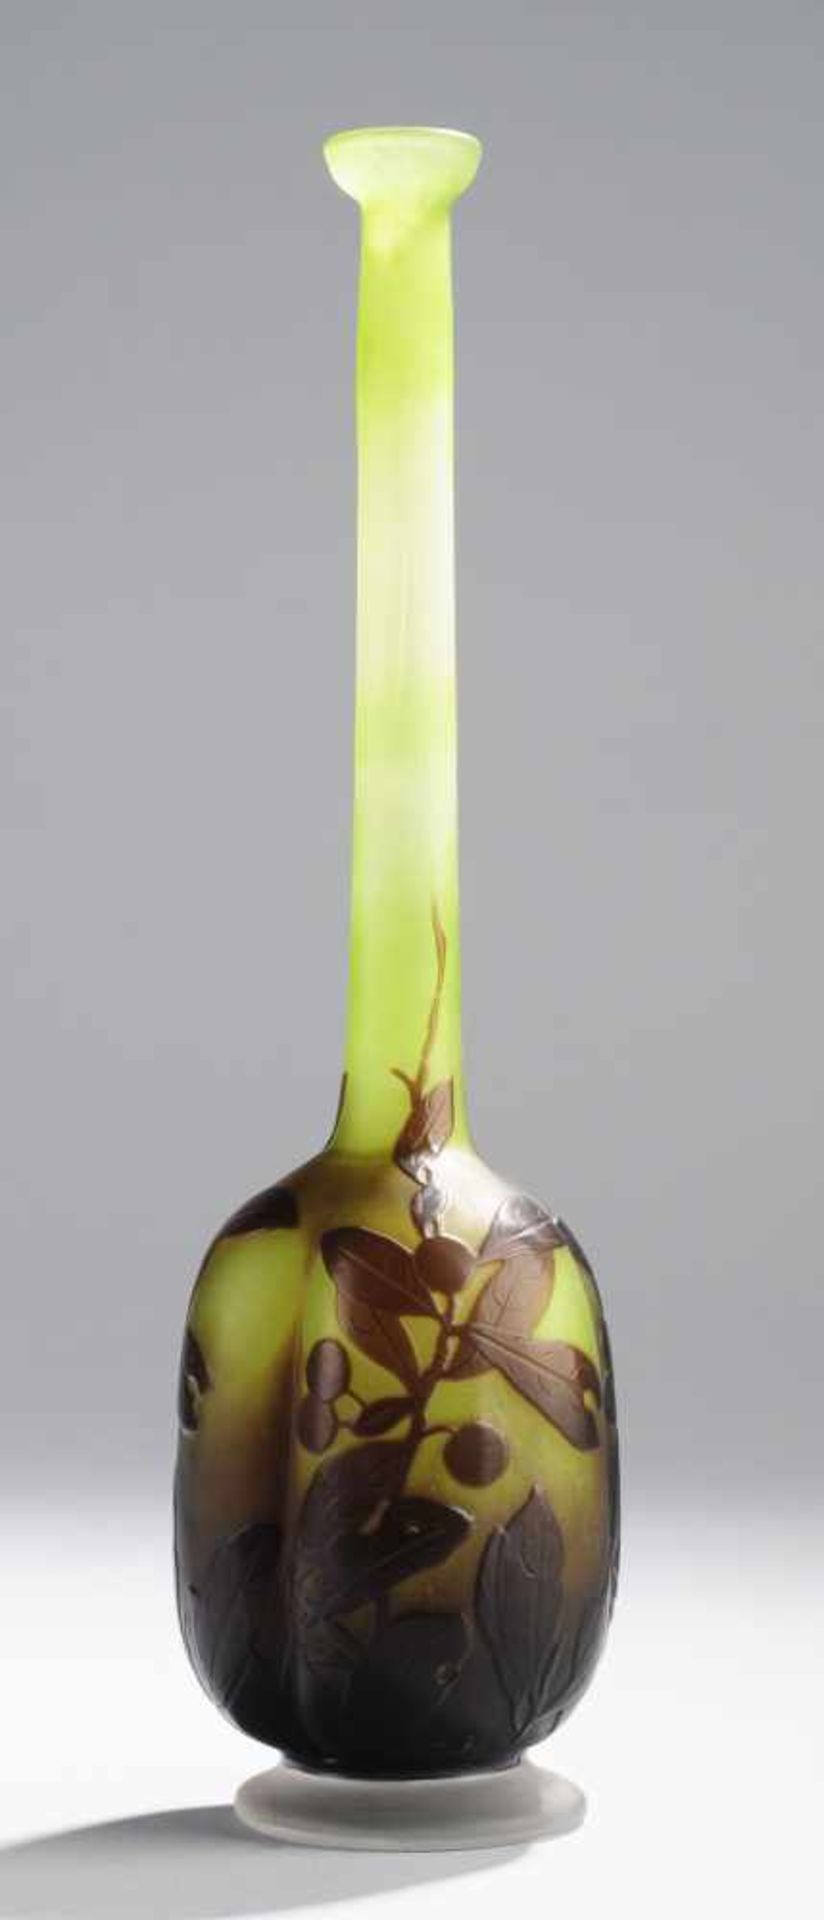 Vase mit SchlehenzweigenFarbloses Glas mit grünen Pulvereinschmelzungen, violett überfangen.